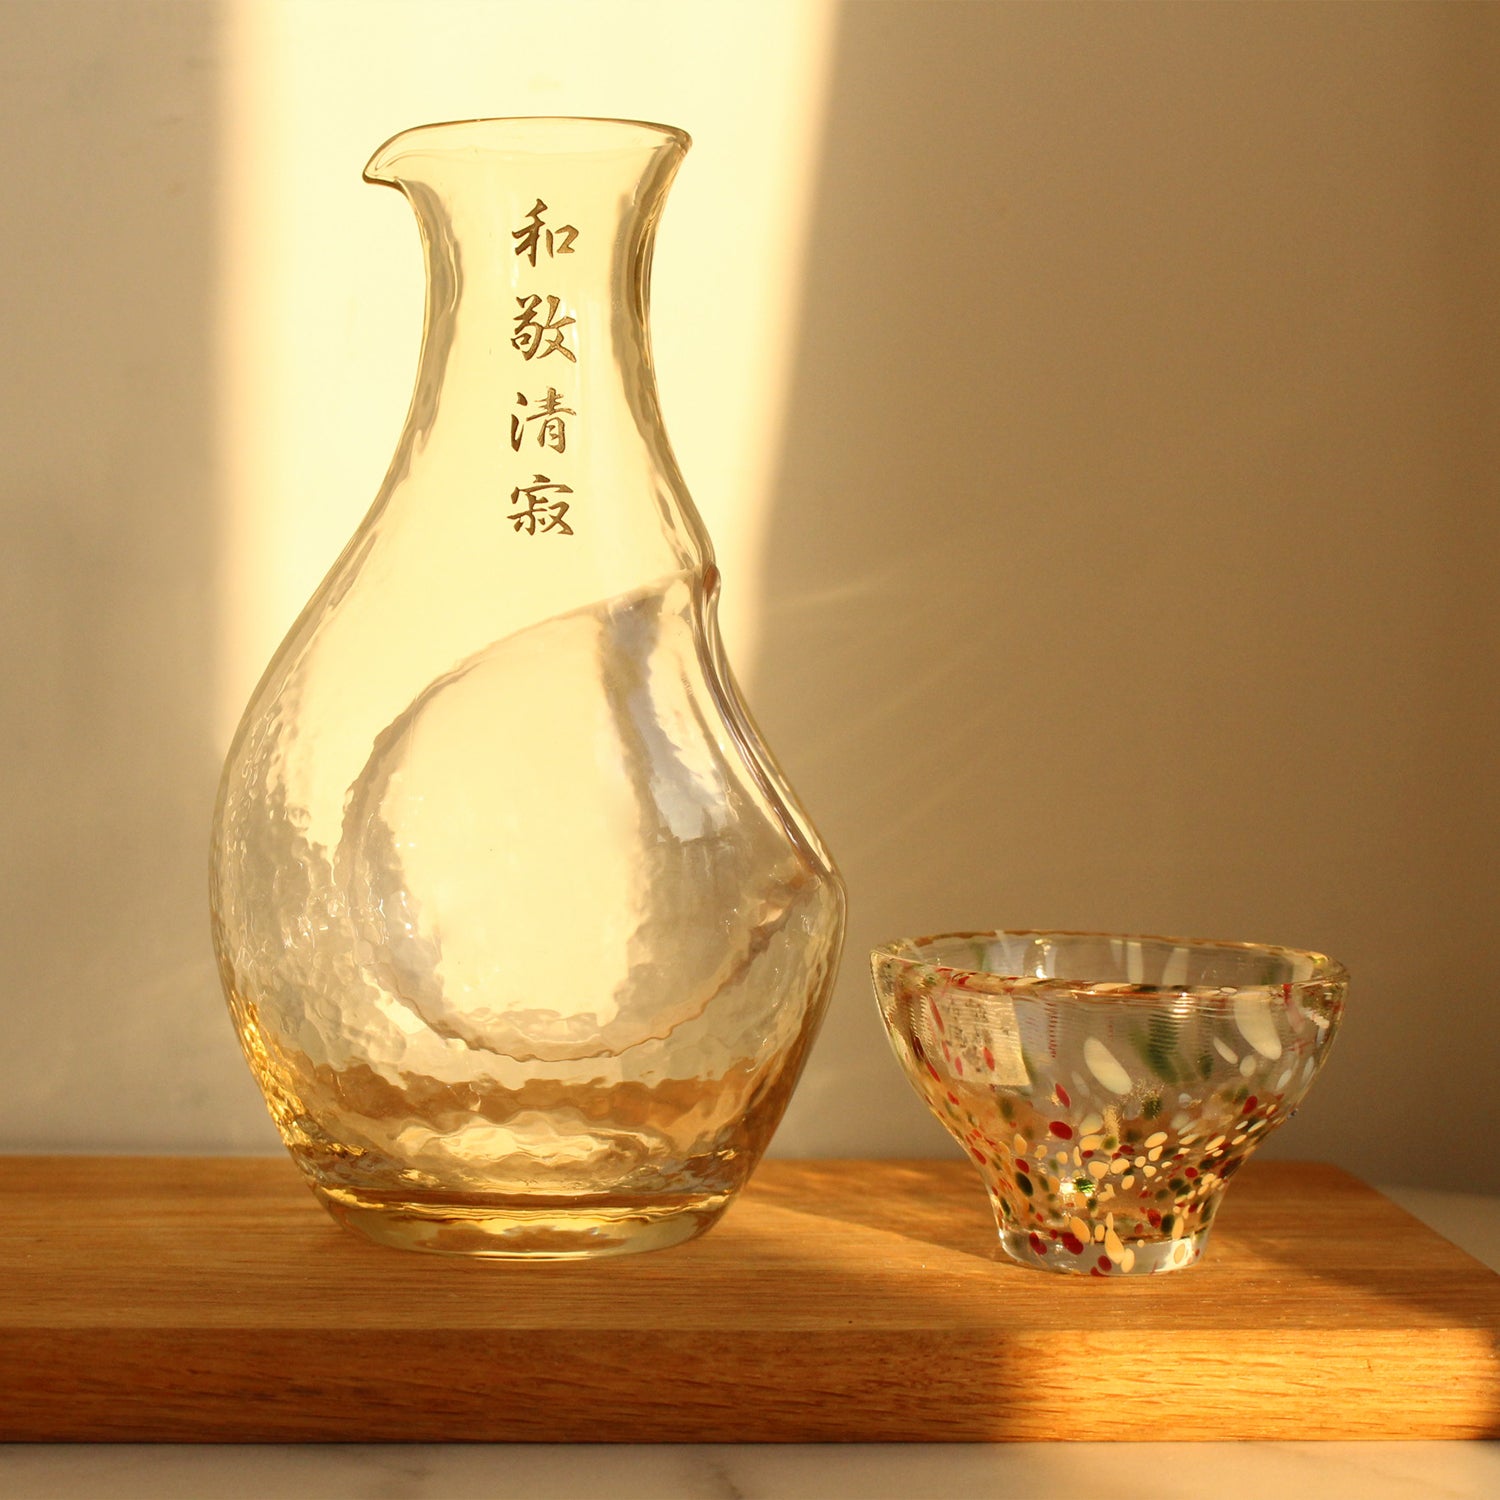 人手雕刻金賞受賞酒大吟釀套裝 | Gold Medal Sake Daiginjo Gift Set | - Design Your Own Wine